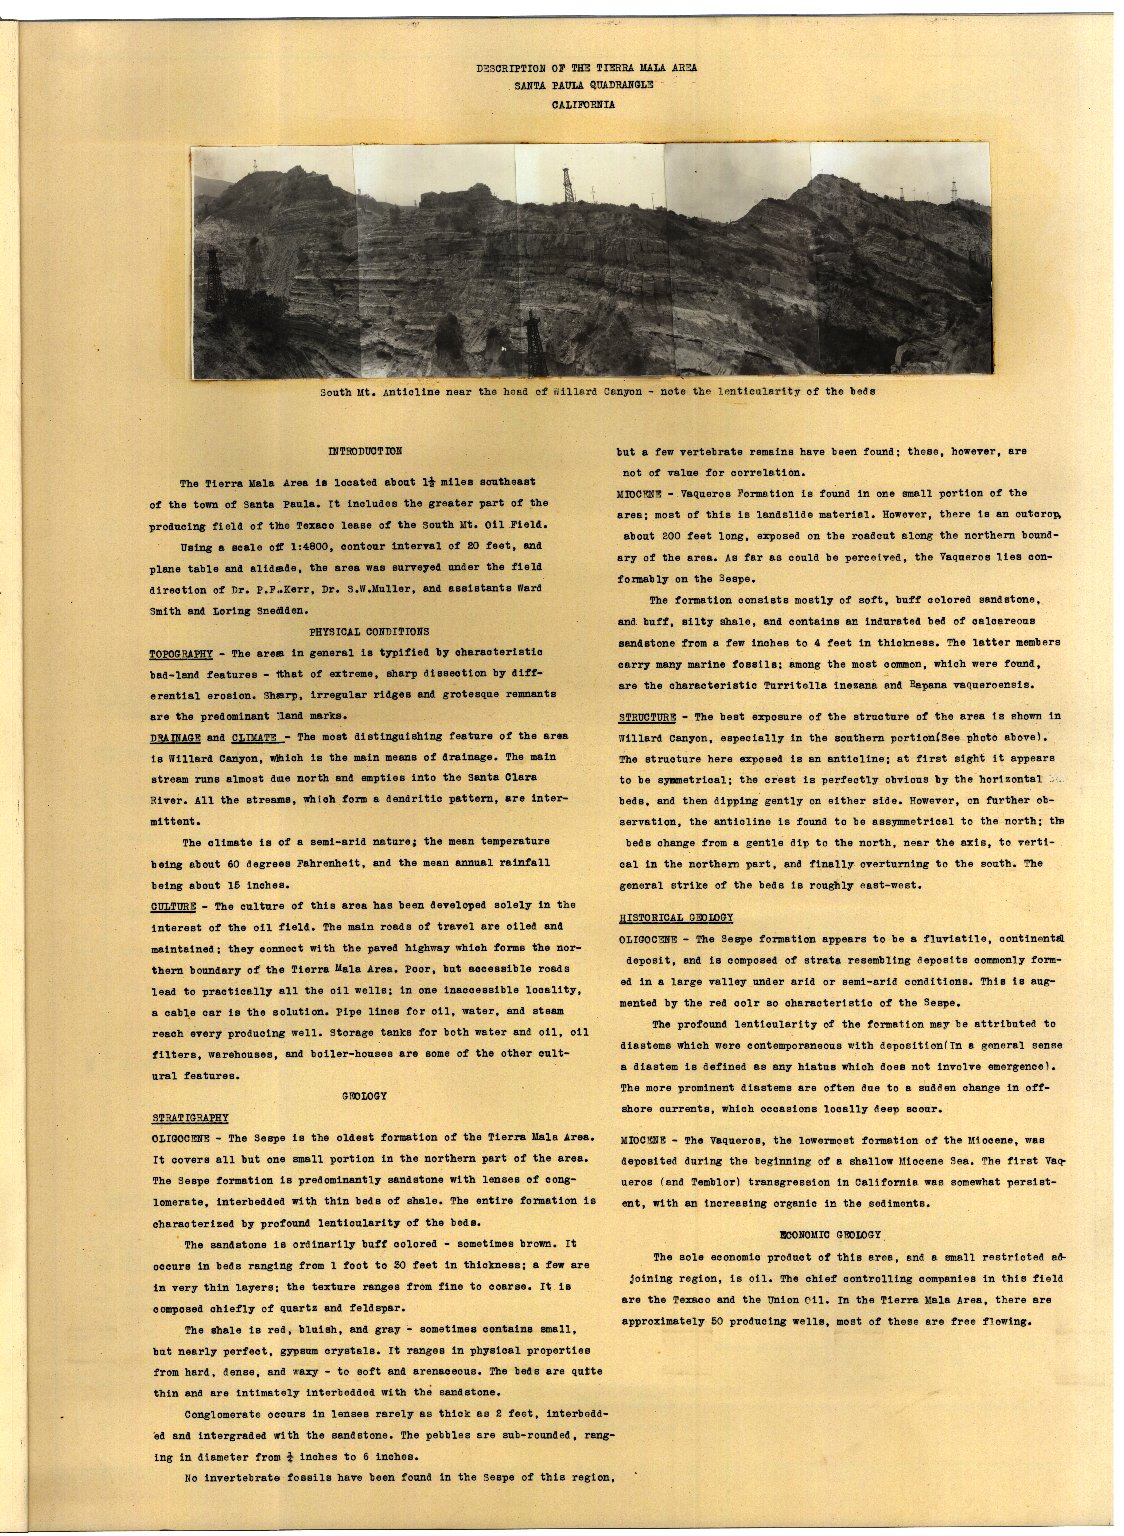 Geologic folio of a part of the Santa Paula quadrangle.